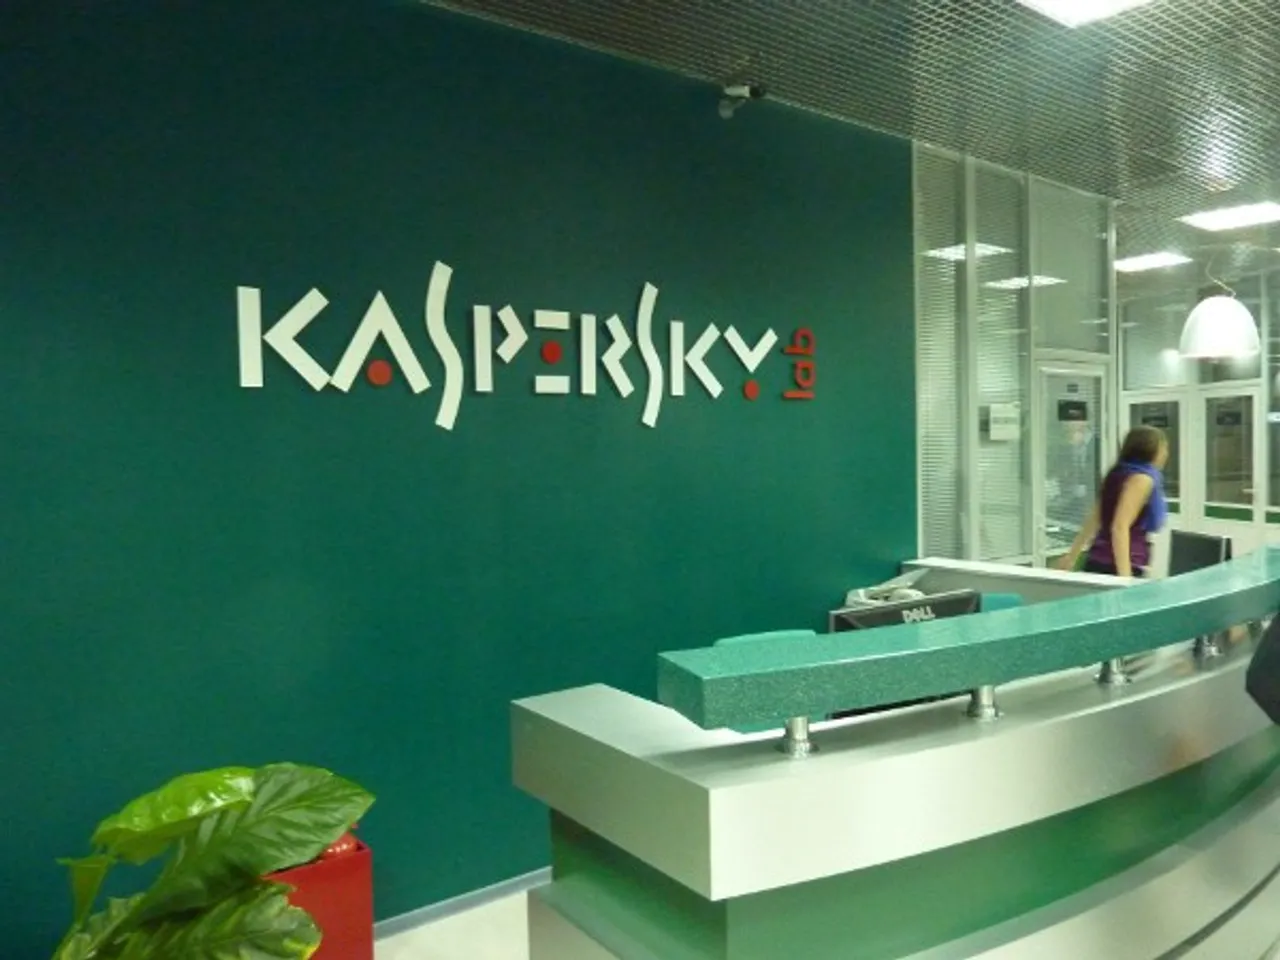 Kaspersky updates security scanner